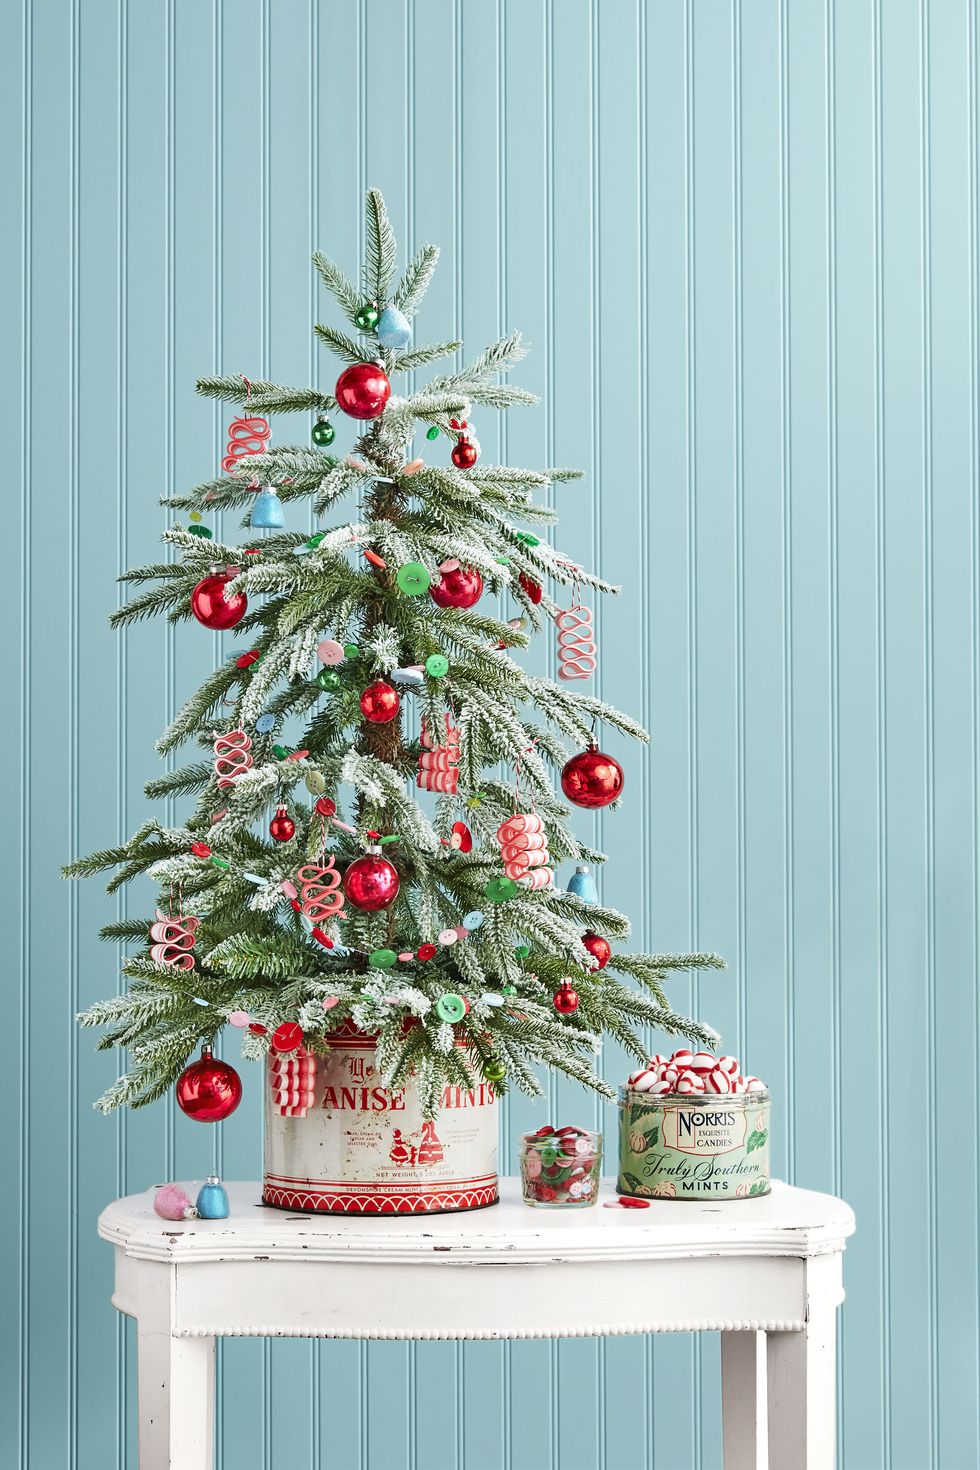 Một cái cây nhỏ bé cũng tạo cảm giác hùng vĩ như một cây đinh ba khi đậu trên đỉnh bàn. Phần thưởng: Ông già Noel sẽ thích không gian bên dưới bàn để cất những món quà lớn hơn!